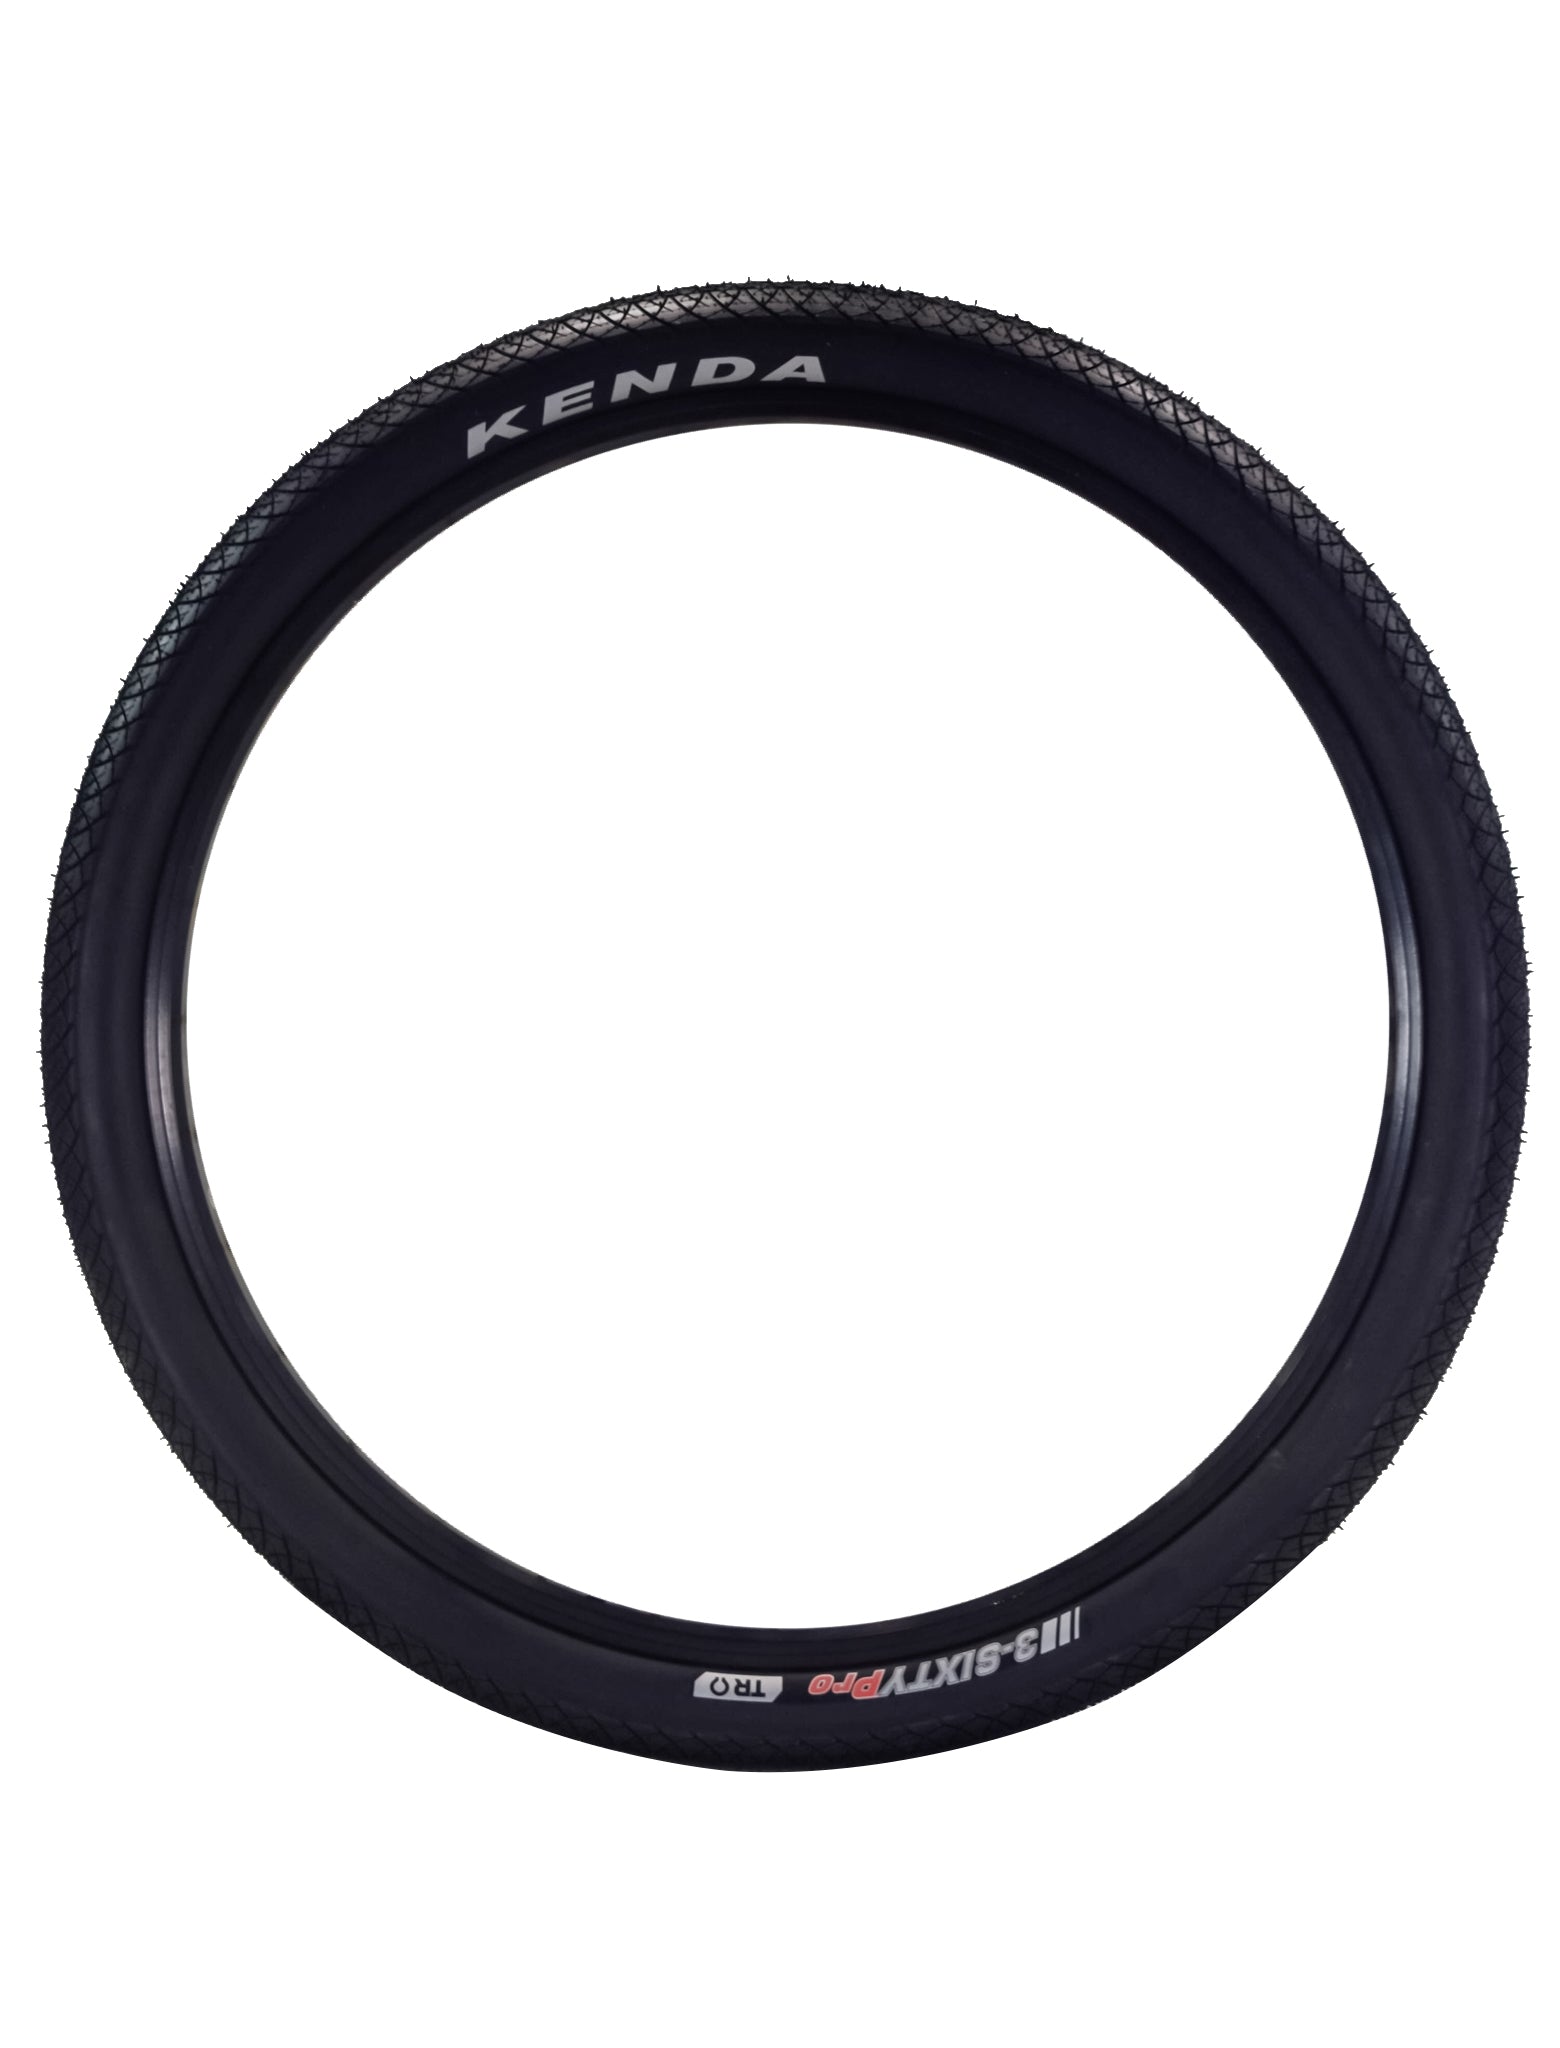 Kenda 3-Sixty Pro TR 120tpi Fold Black 26x2.5 Bicycle Tire & Keychain (Single)